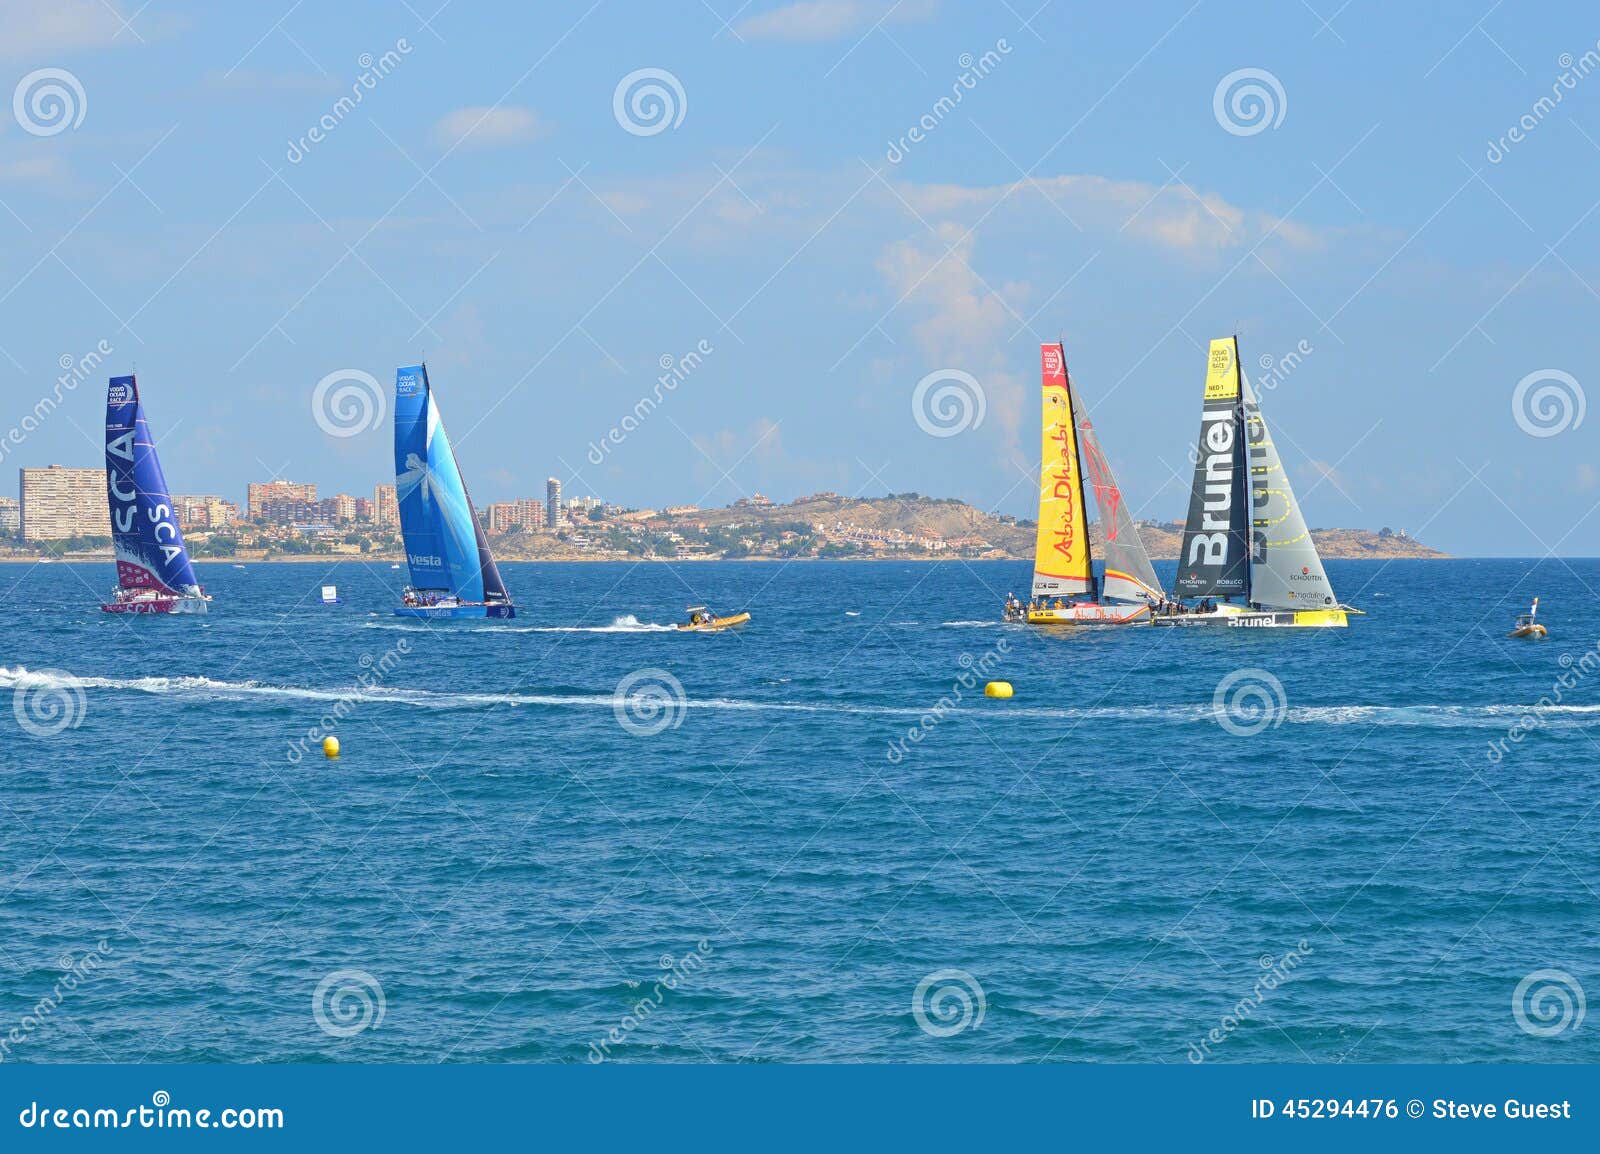 around the world sailboat race